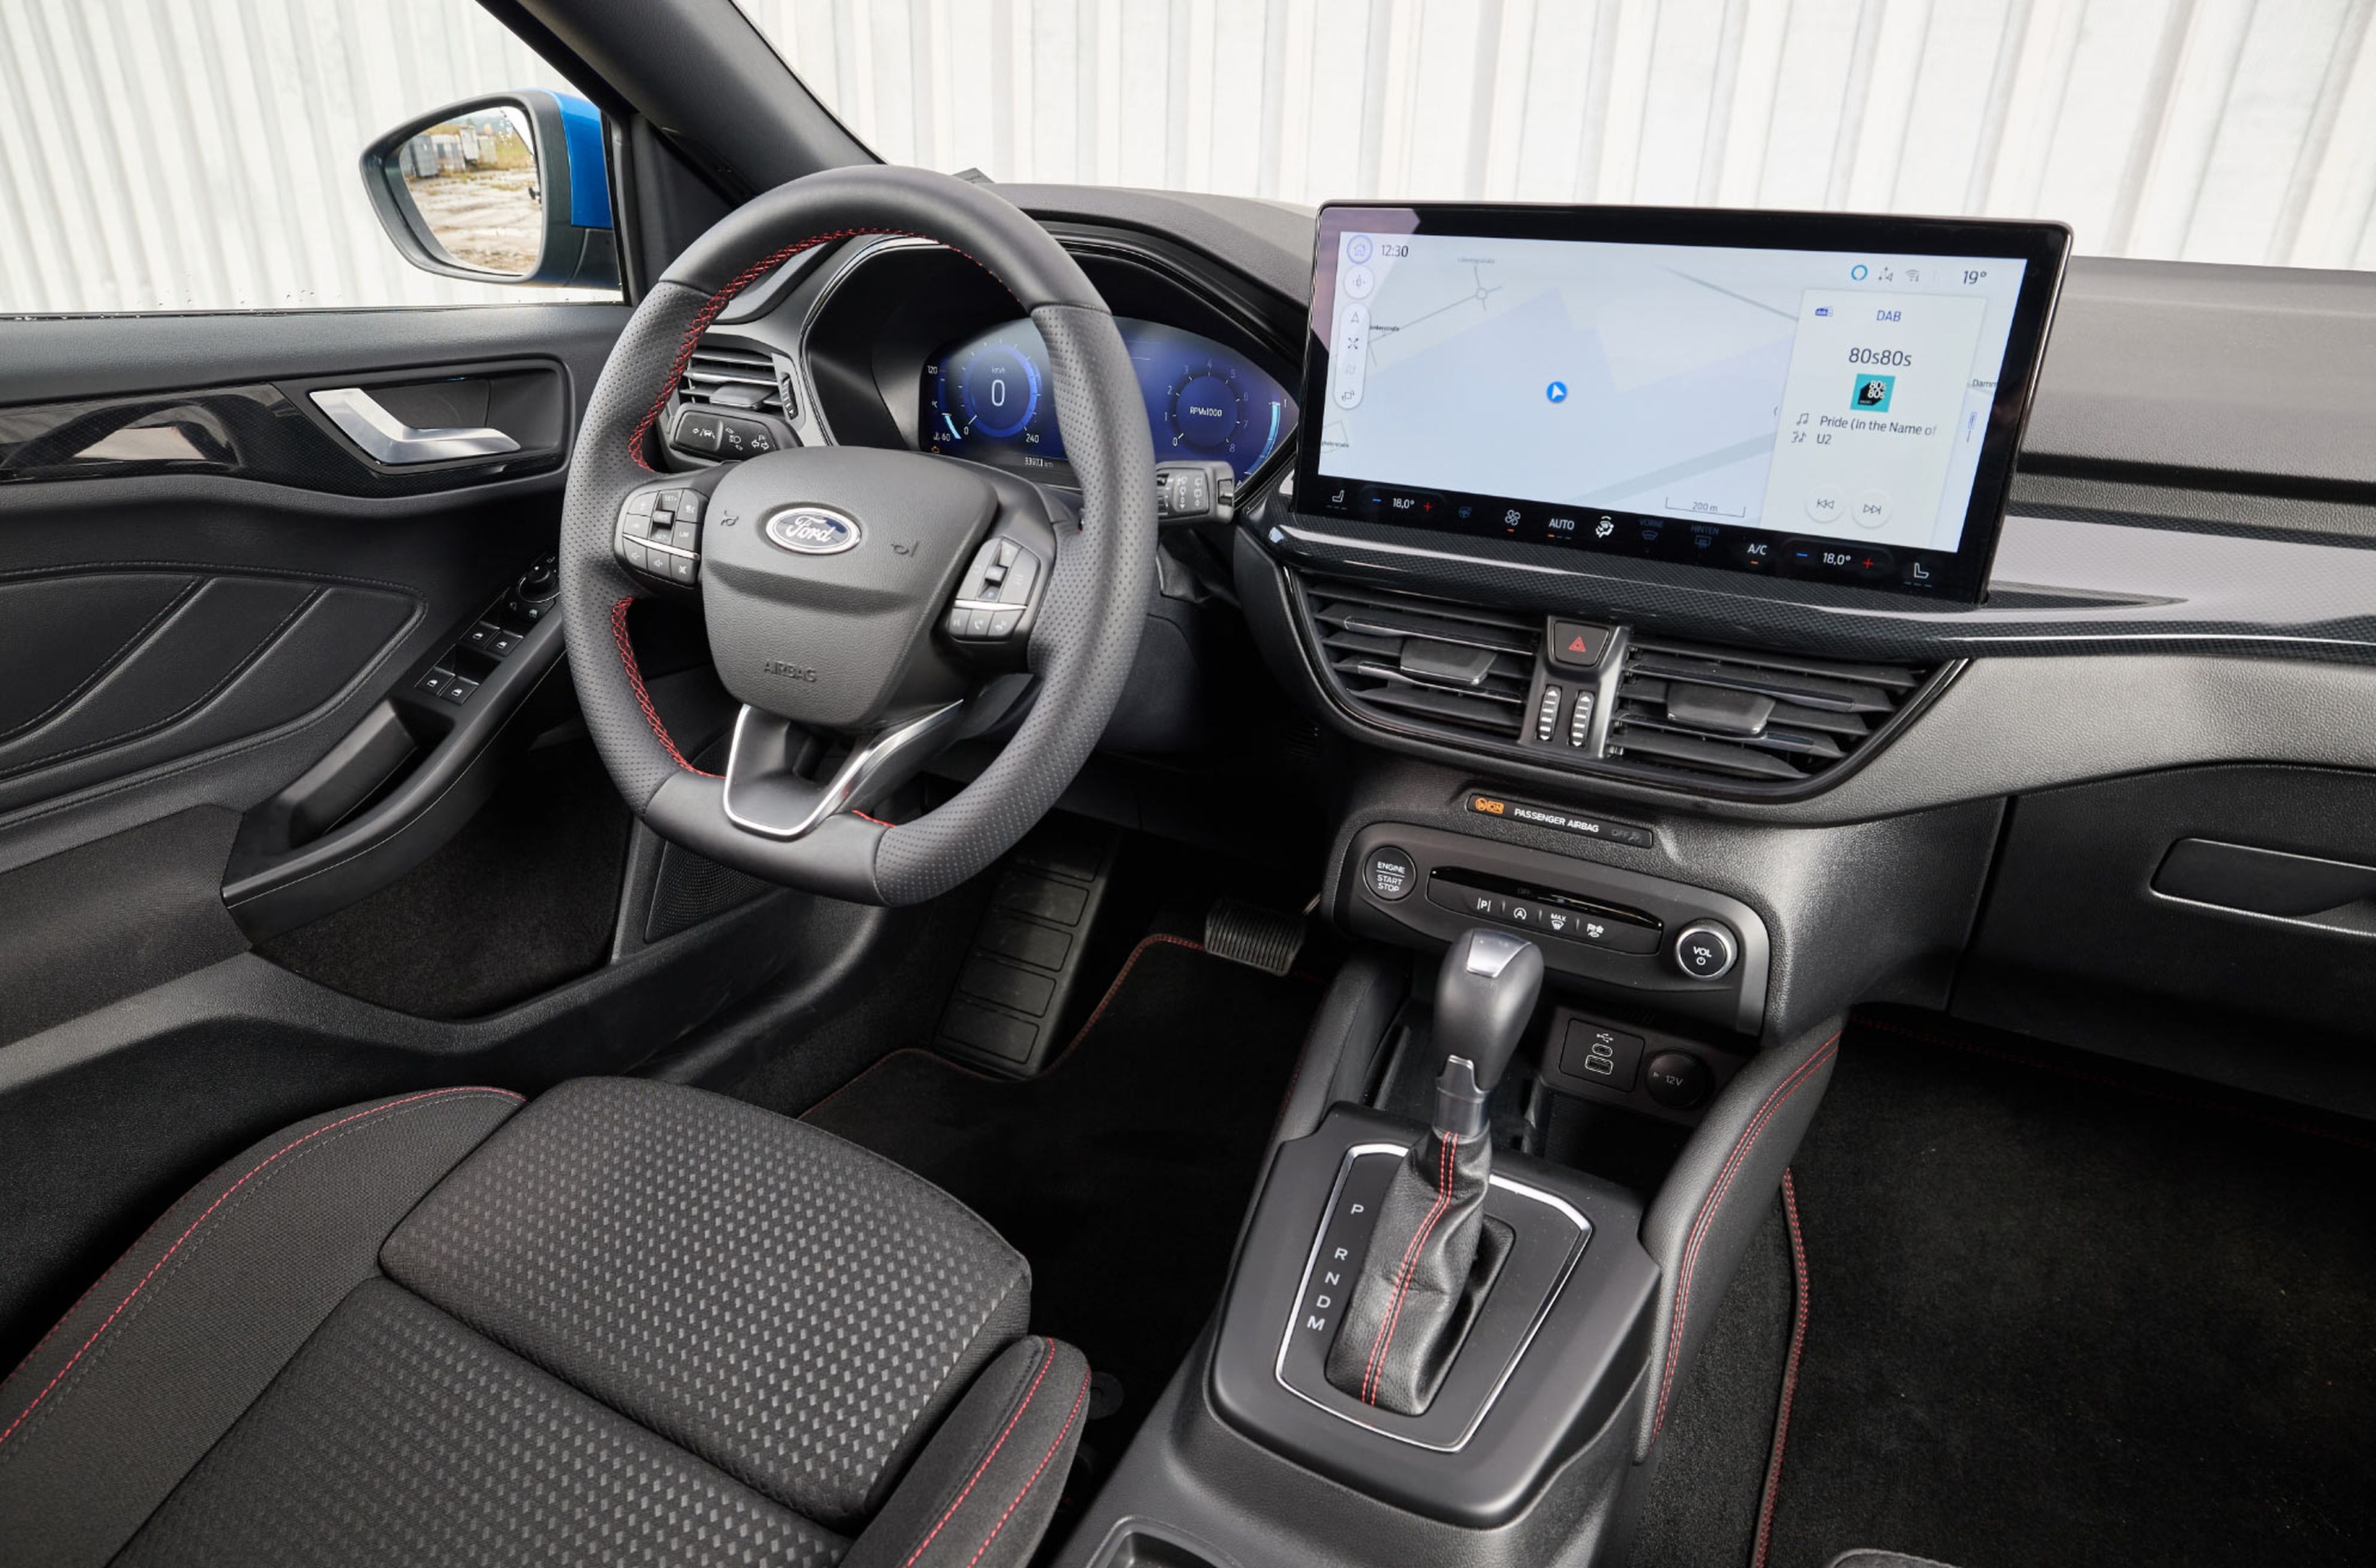 Comparativa del Mazda3 vs Ford Focus cockpit